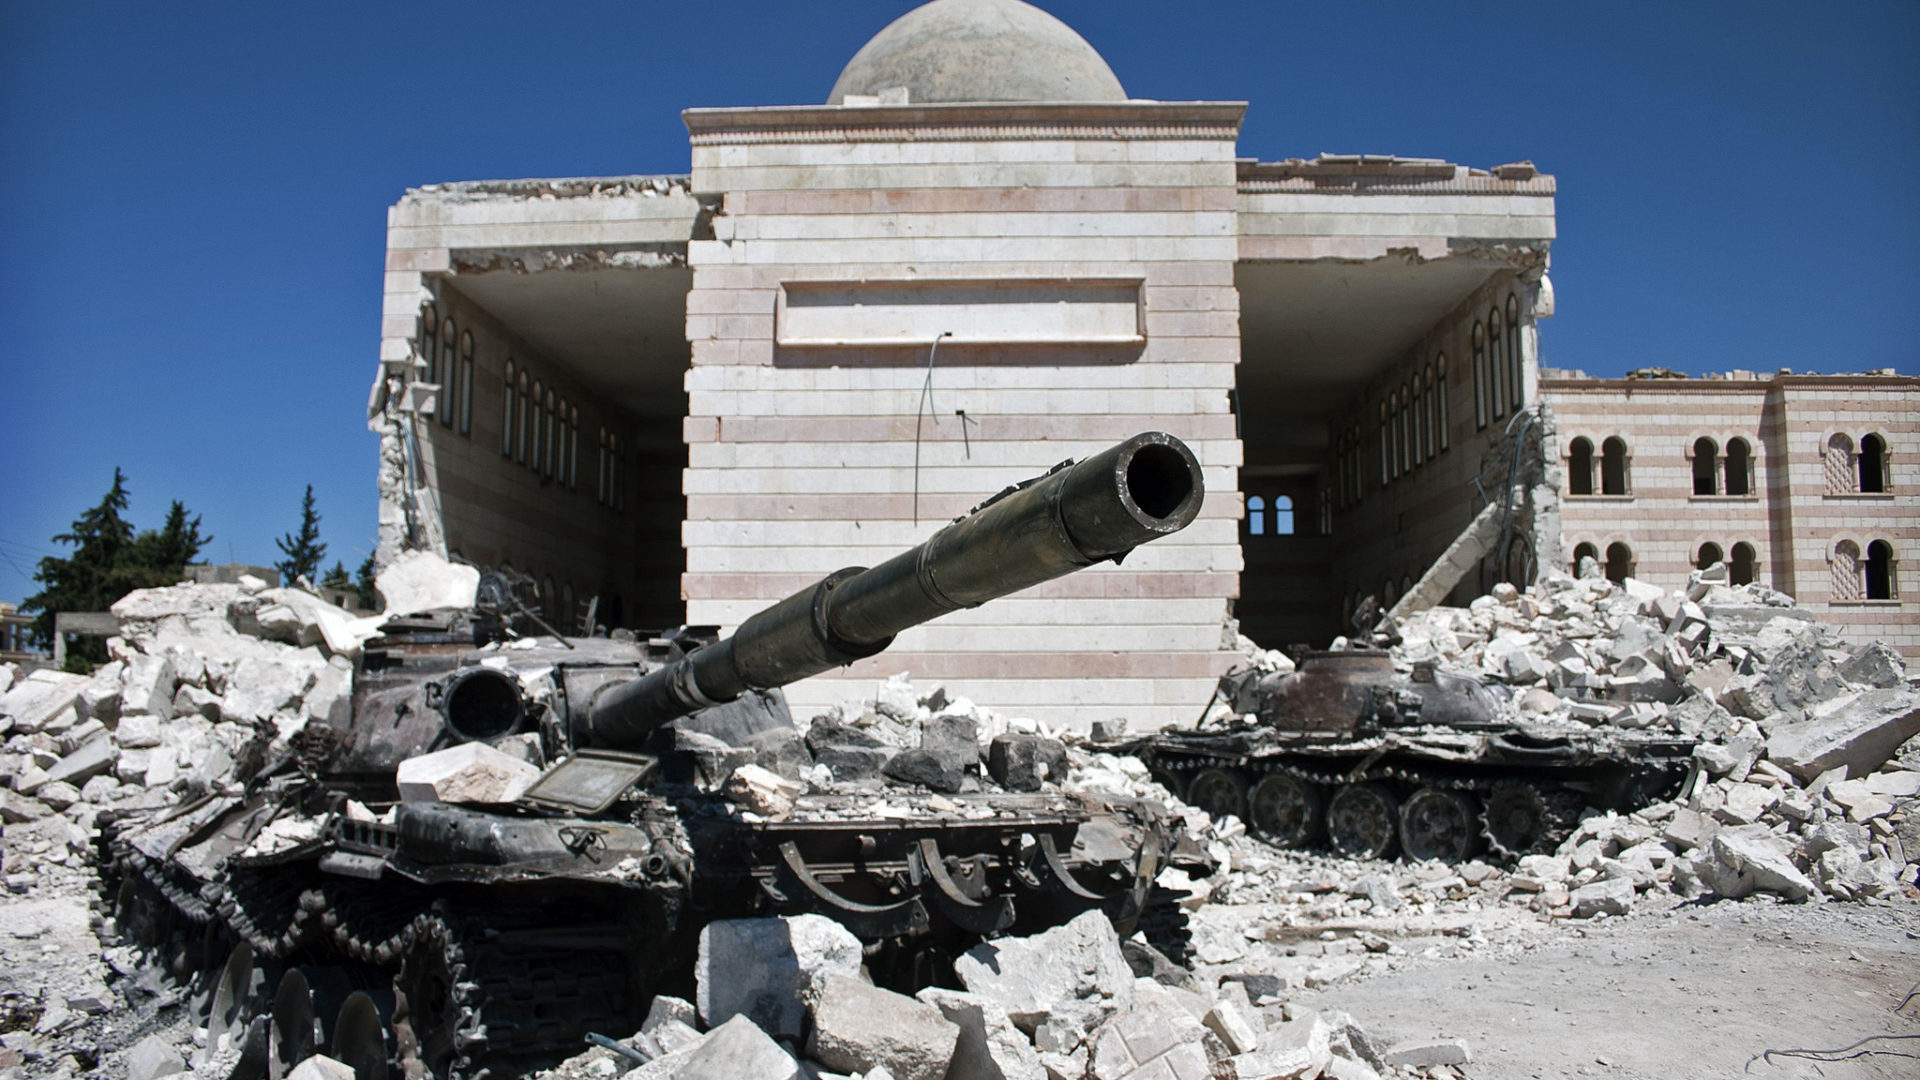 Les tensions en Syrie se sont encore aggravées après le bombardement le 7 avril d’une banlieue de Damas par l’armée gouvernementale | © Flickr/christiaantriebert/CC BY-NC 2.0